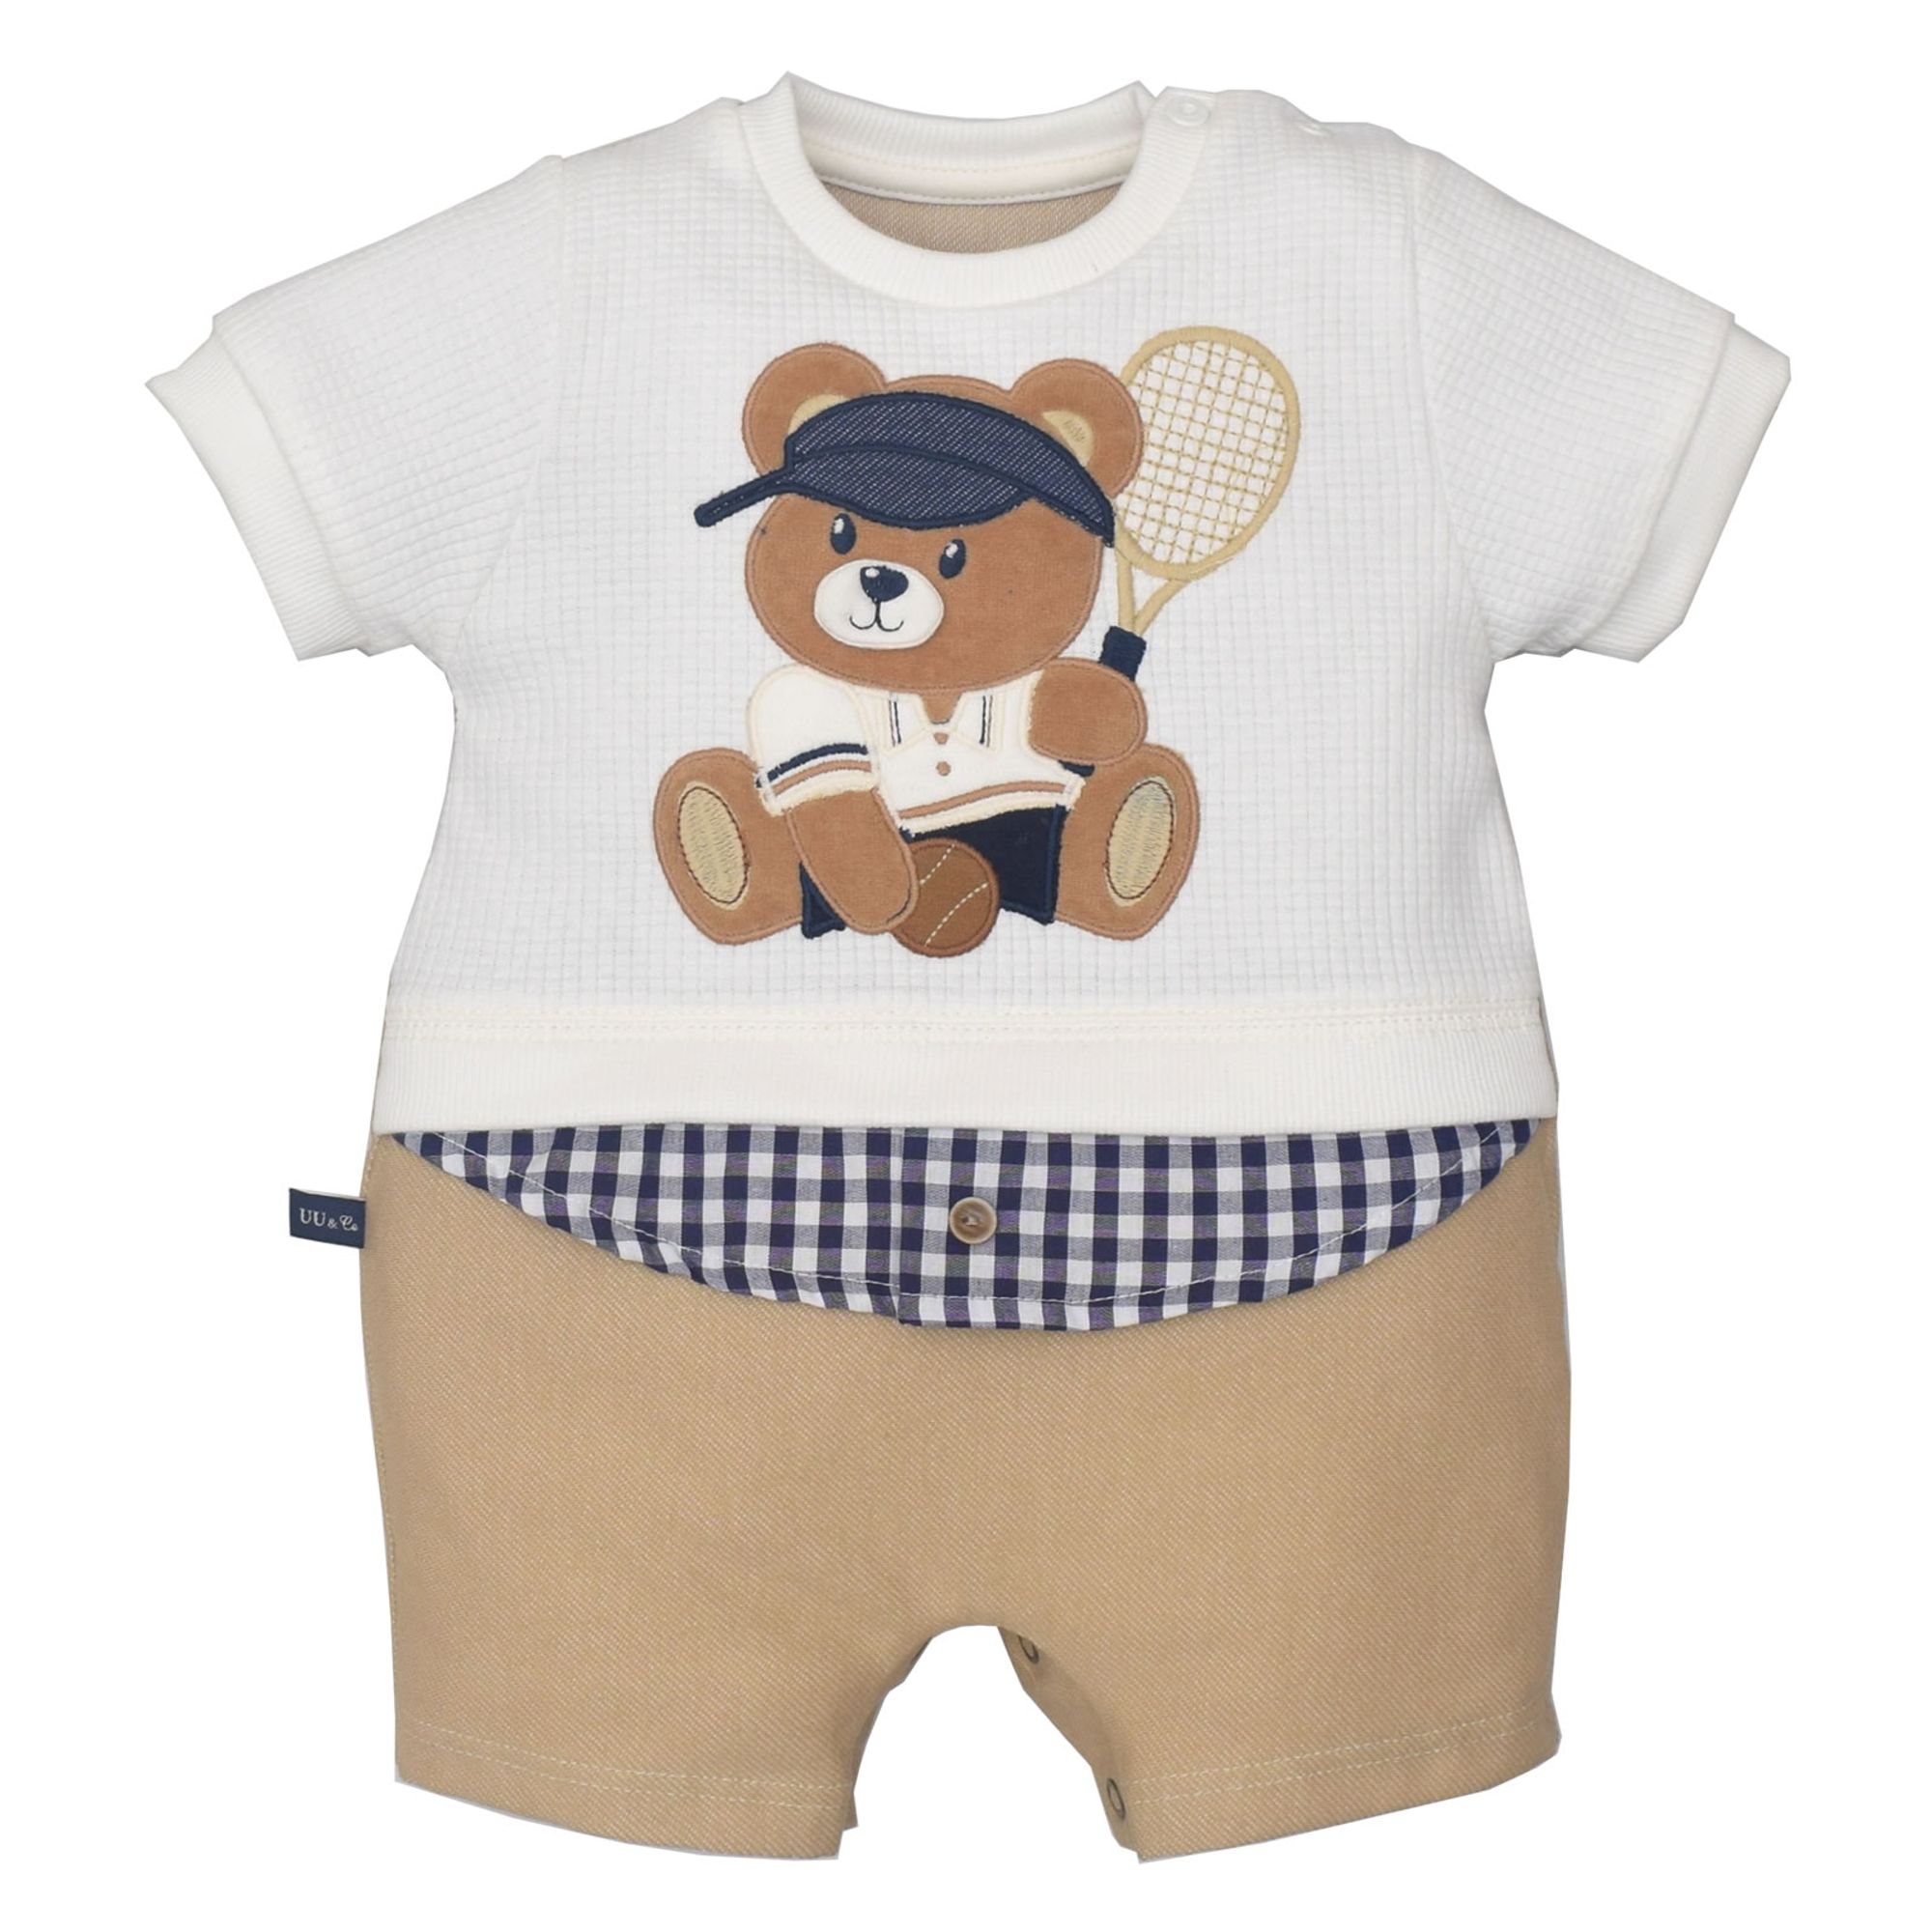 macaquinho-bebes-malha-camisa-costurada-e-ursinho-tenista-bordado-1